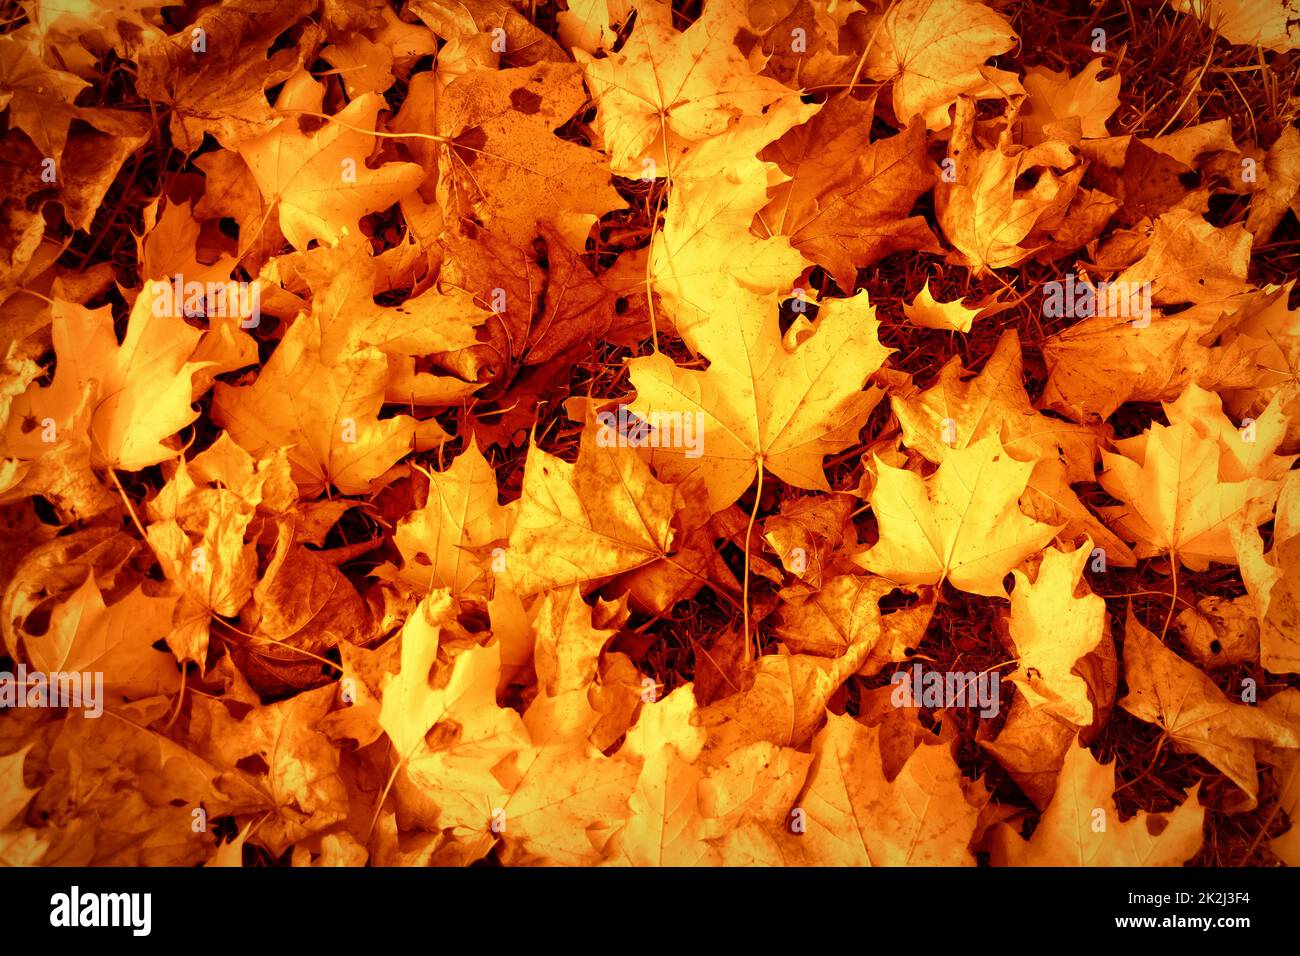 L'automne laisse le fond.Image colorée de l'arrière-plan des feuilles d'automne tombées, parfaite pour une utilisation saisonnière. Banque D'Images